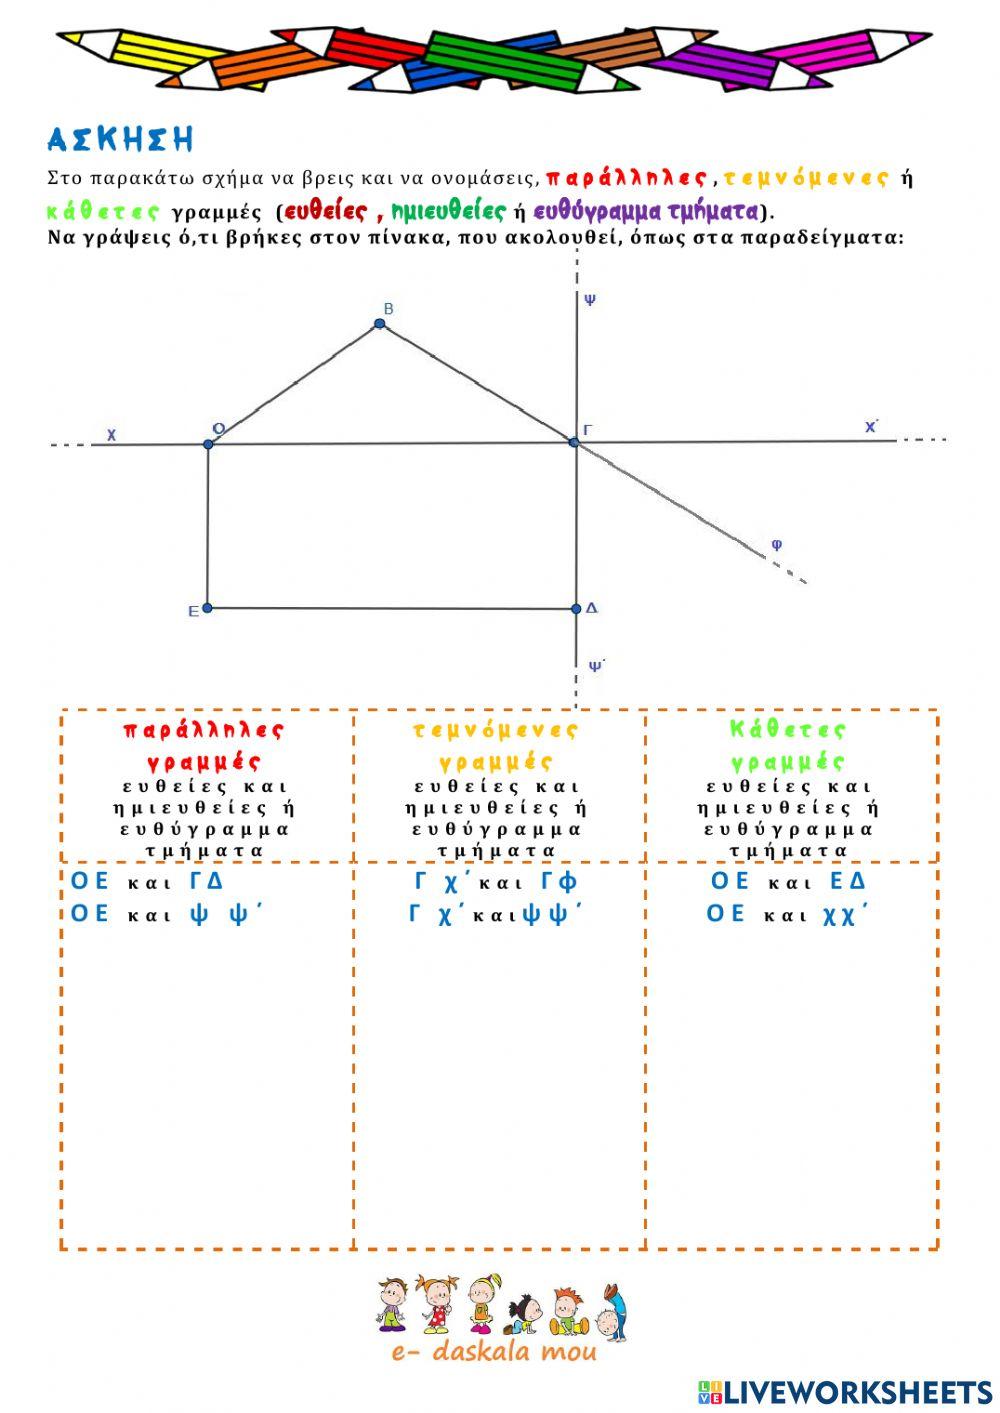 Βασικές γεωμετρικές έννοιες 2 - παράλληλες, τεμνόμενες, κάθετες ευθείες